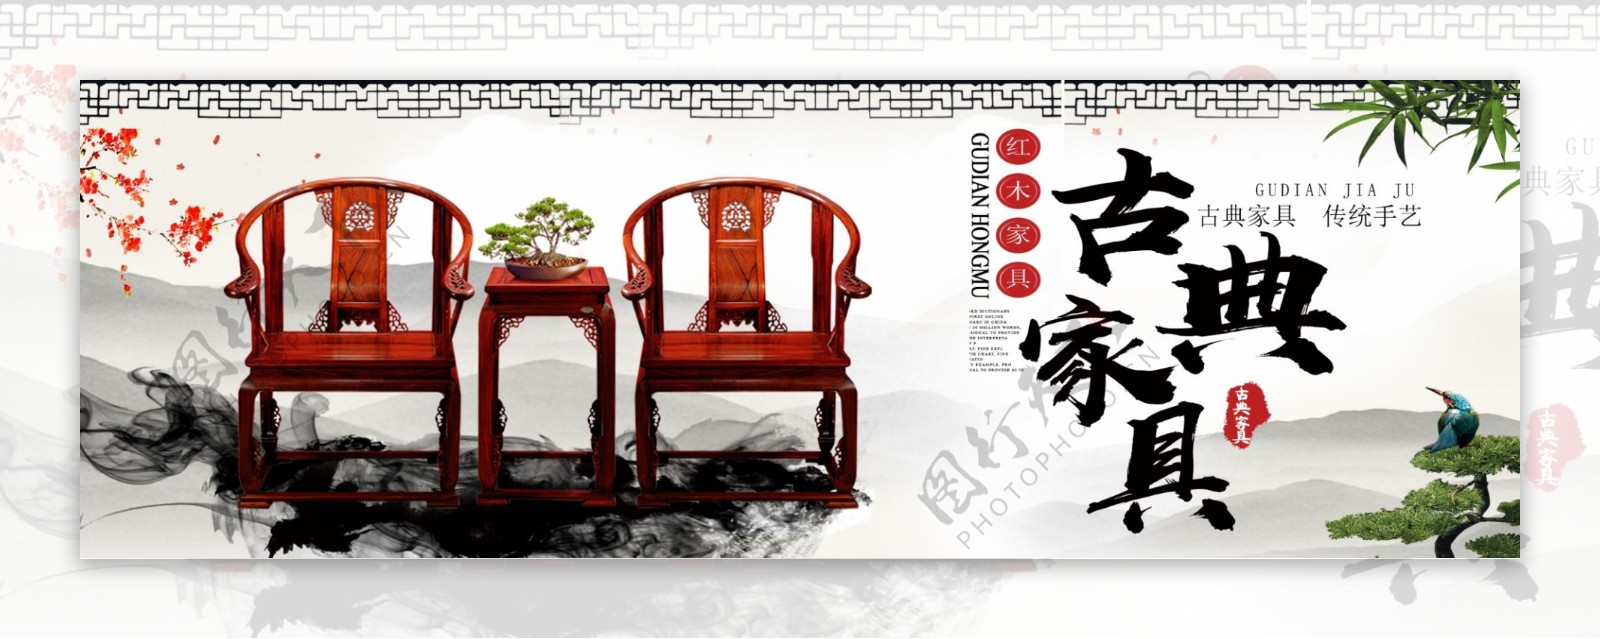 简约中国风创意古典红木家具户外广告设计